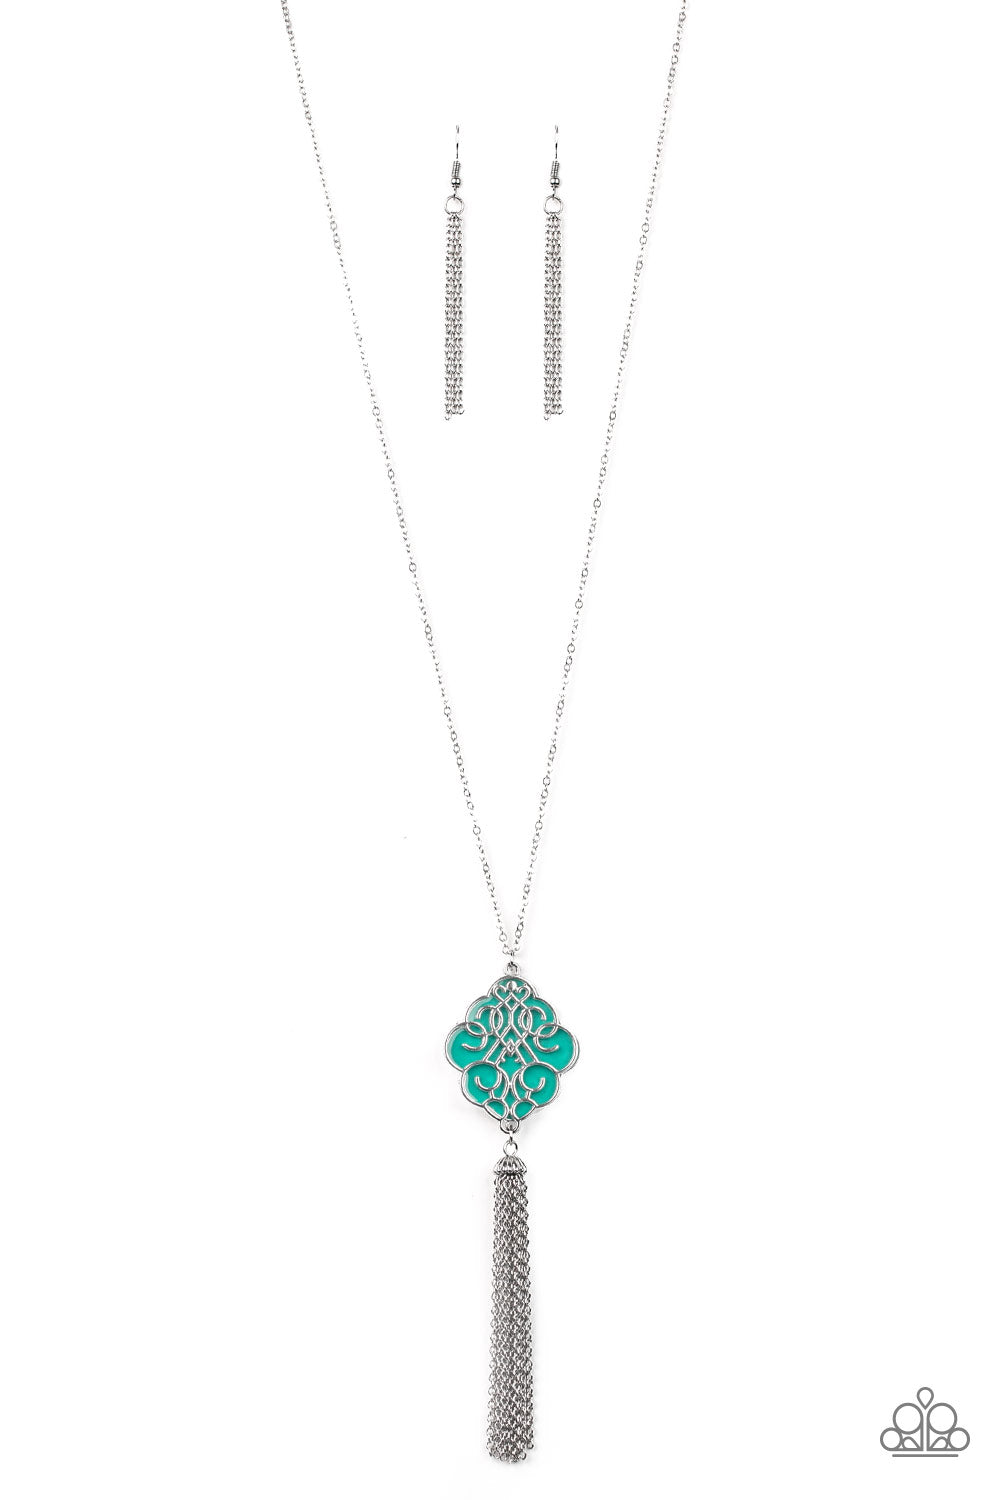 Paparazzi - Malibu Mandala - Green & Silver Necklace